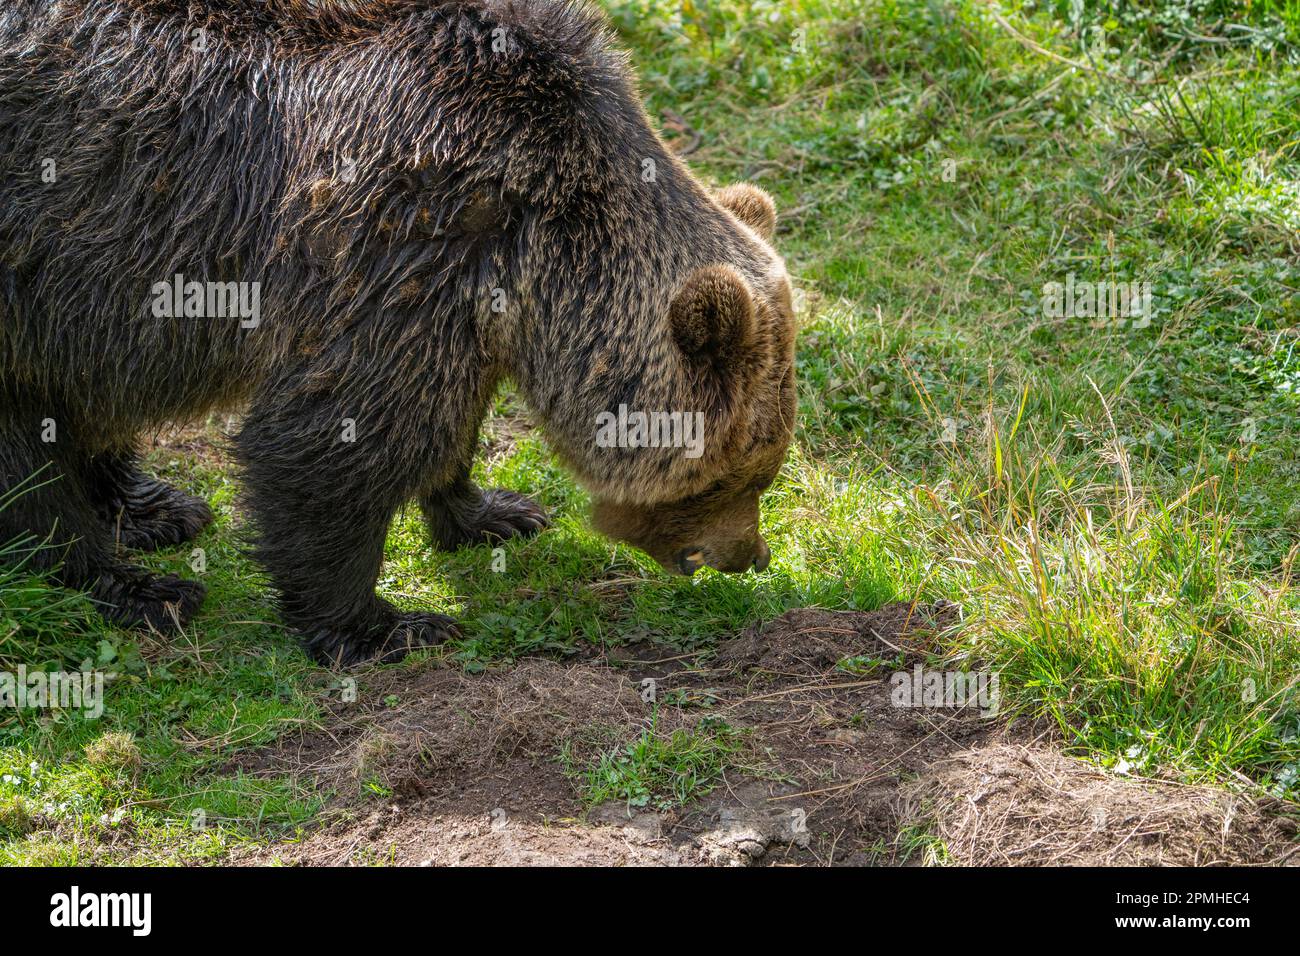 Ona Vidal. Orso marrone sull'erba verde accanto ad un albero, seduto, salvando con la bocca aperta. Gli orsi sono mammiferi che appartengono alla famiglia Ursidae. T Foto Stock